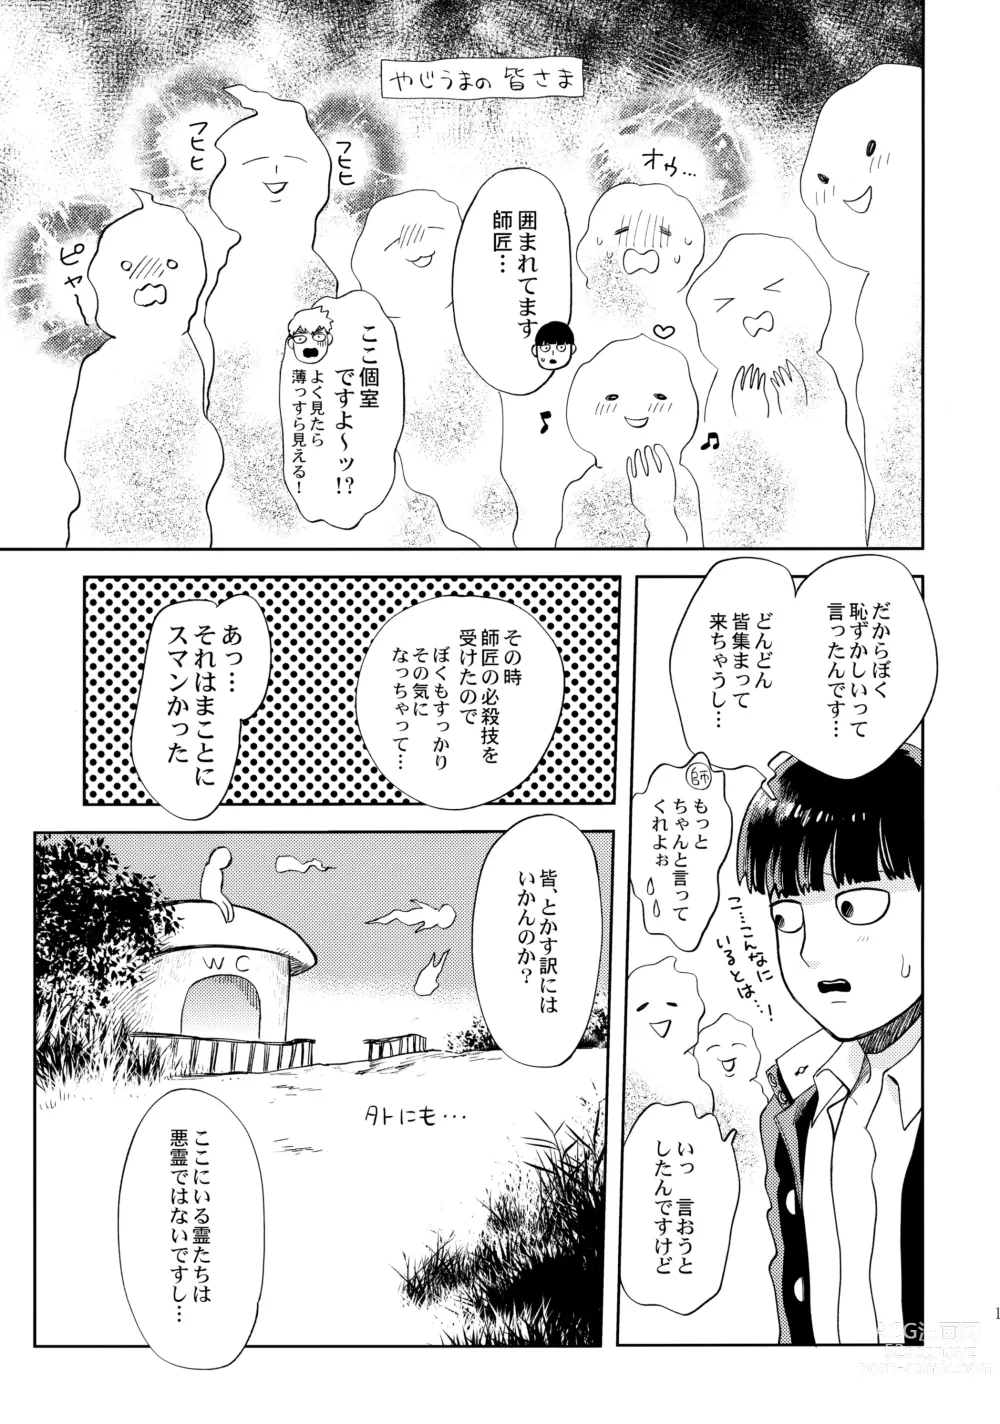 Page 16 of doujinshi Honjitsu mo Tsuujou Eigyoudesu